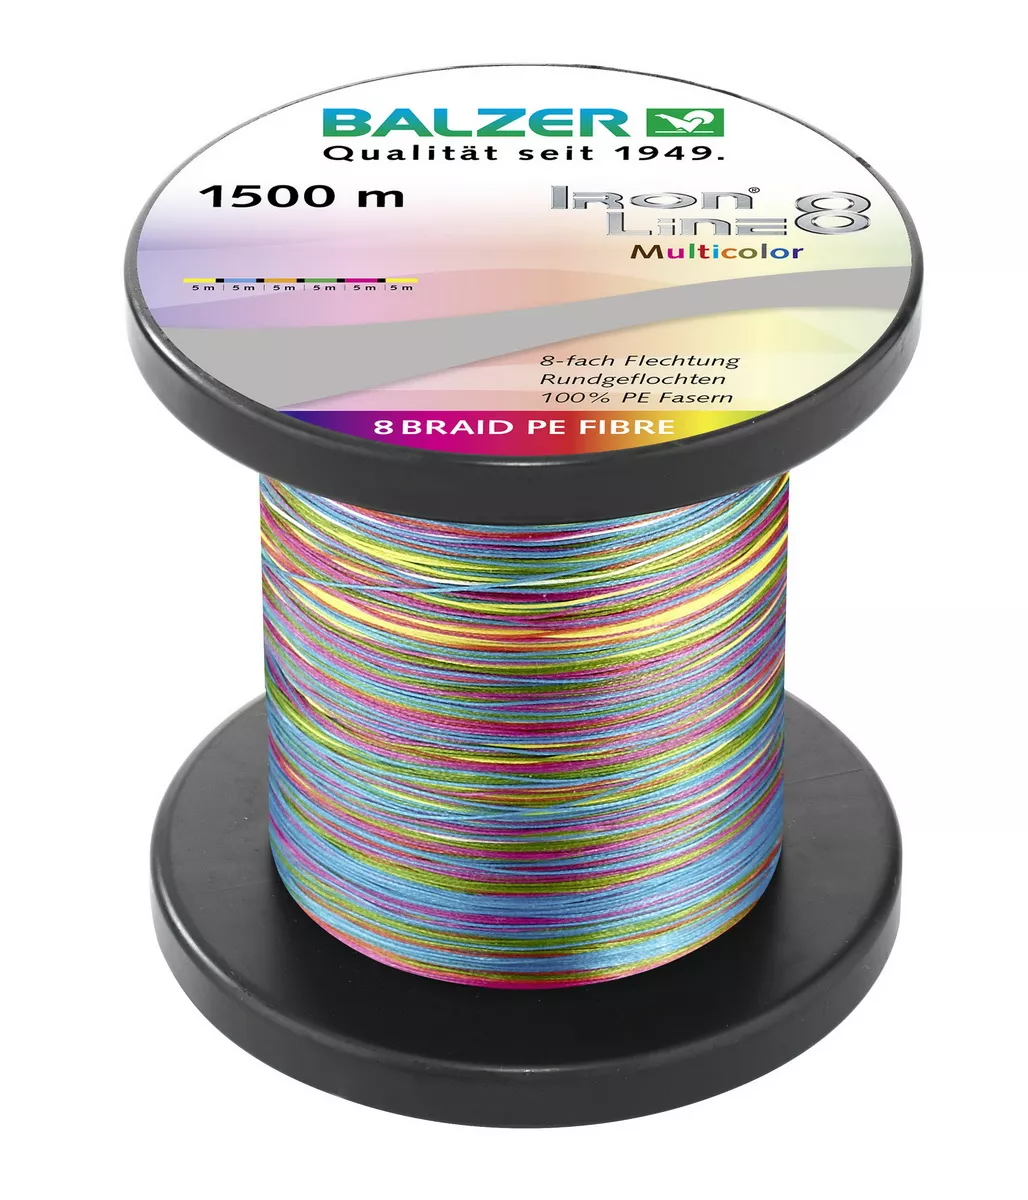 BALZER Iron Line 8 Multicolor, geflochtene Angelschnur, braided